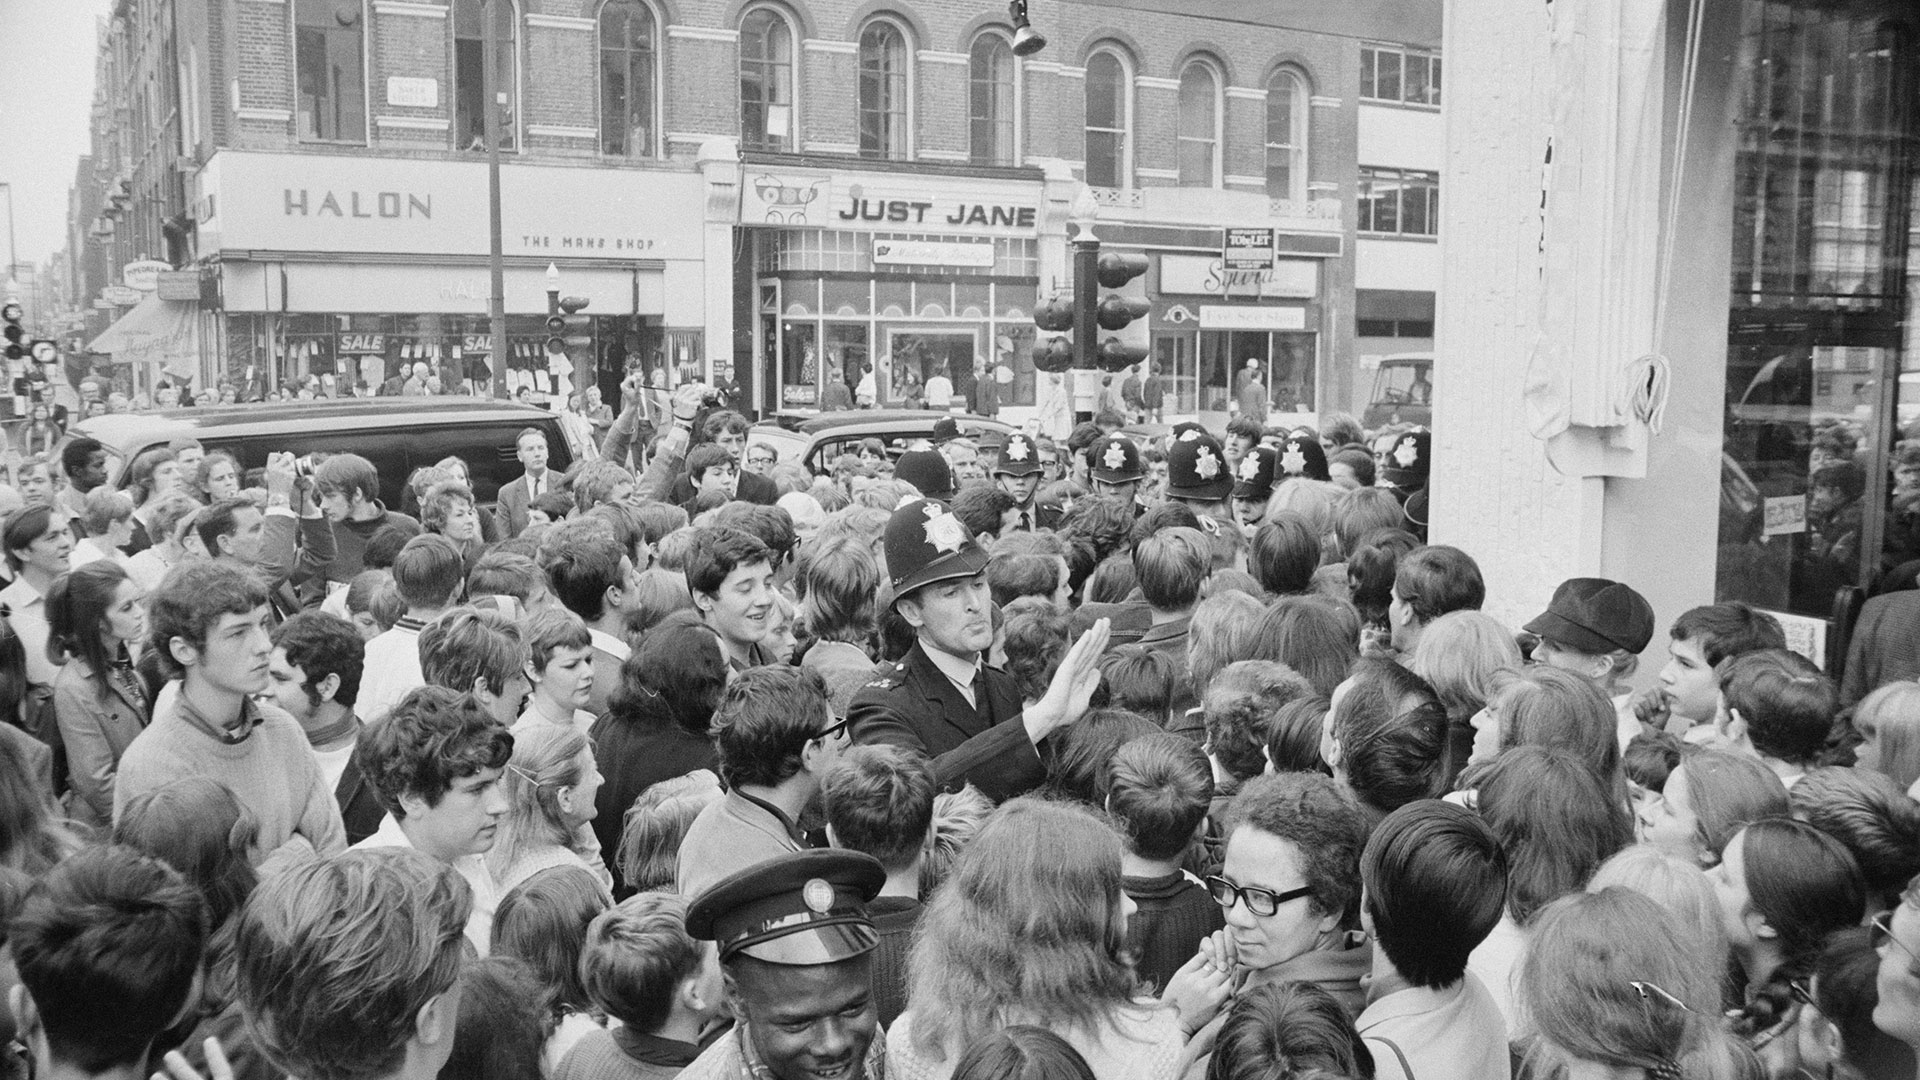 La historia de la tienda de Los Beatles: inversión millonaria, fracaso rápido y final con saqueos